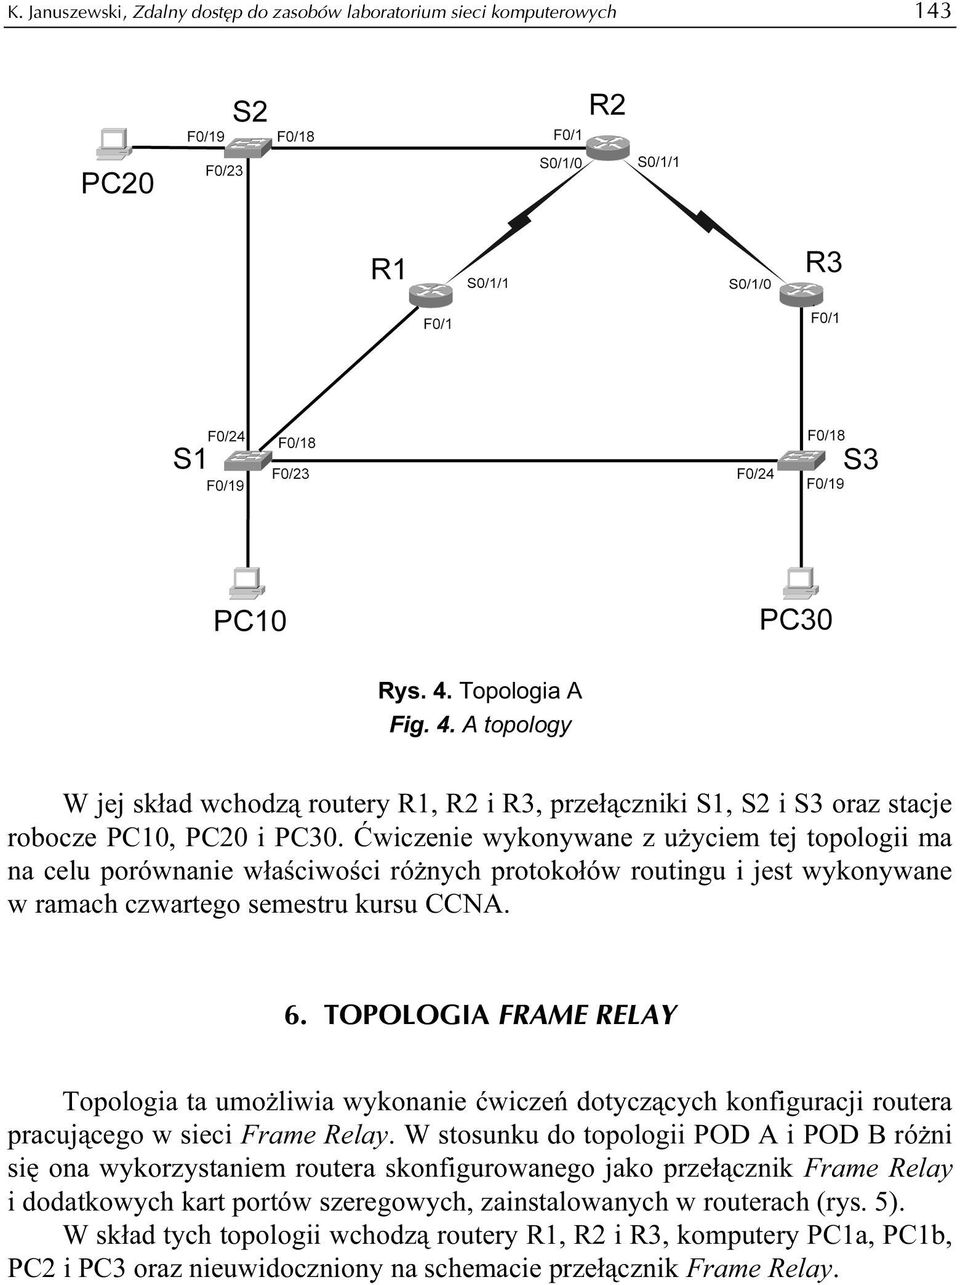 Ćwiczenie wykonywane z użyciem tej topologii ma na celu porównanie właściwości różnych protokołów routingu i jest wykonywane w ramach czwartego semestru kursu CCNA. 6.